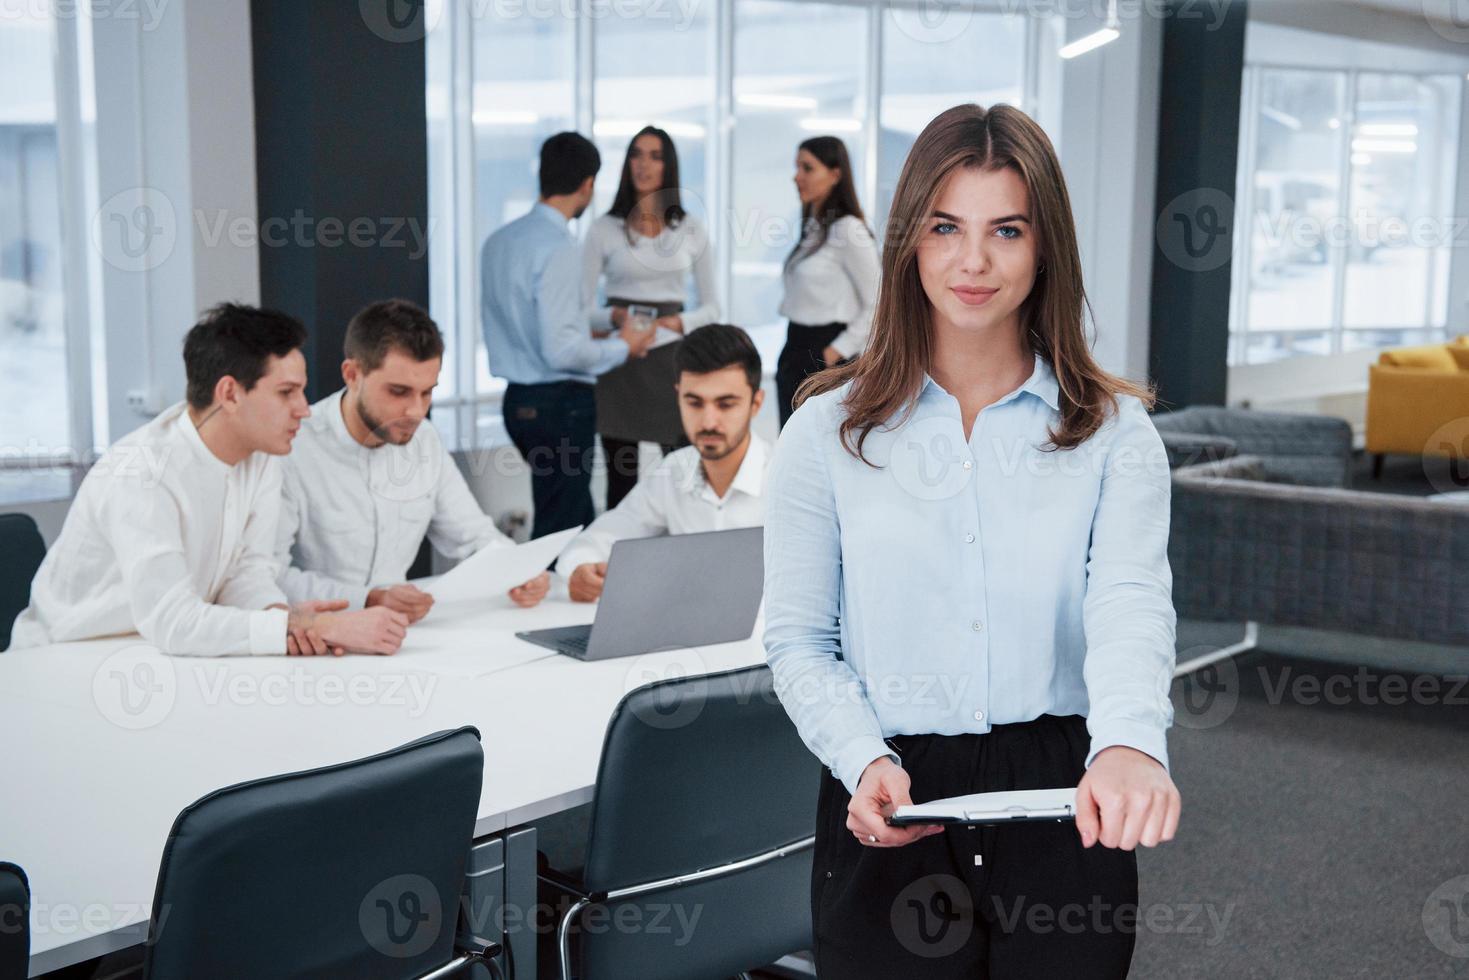 titta rakt in i kameran. porträtt av ung flicka står på kontoret med anställda i bakgrunden foto